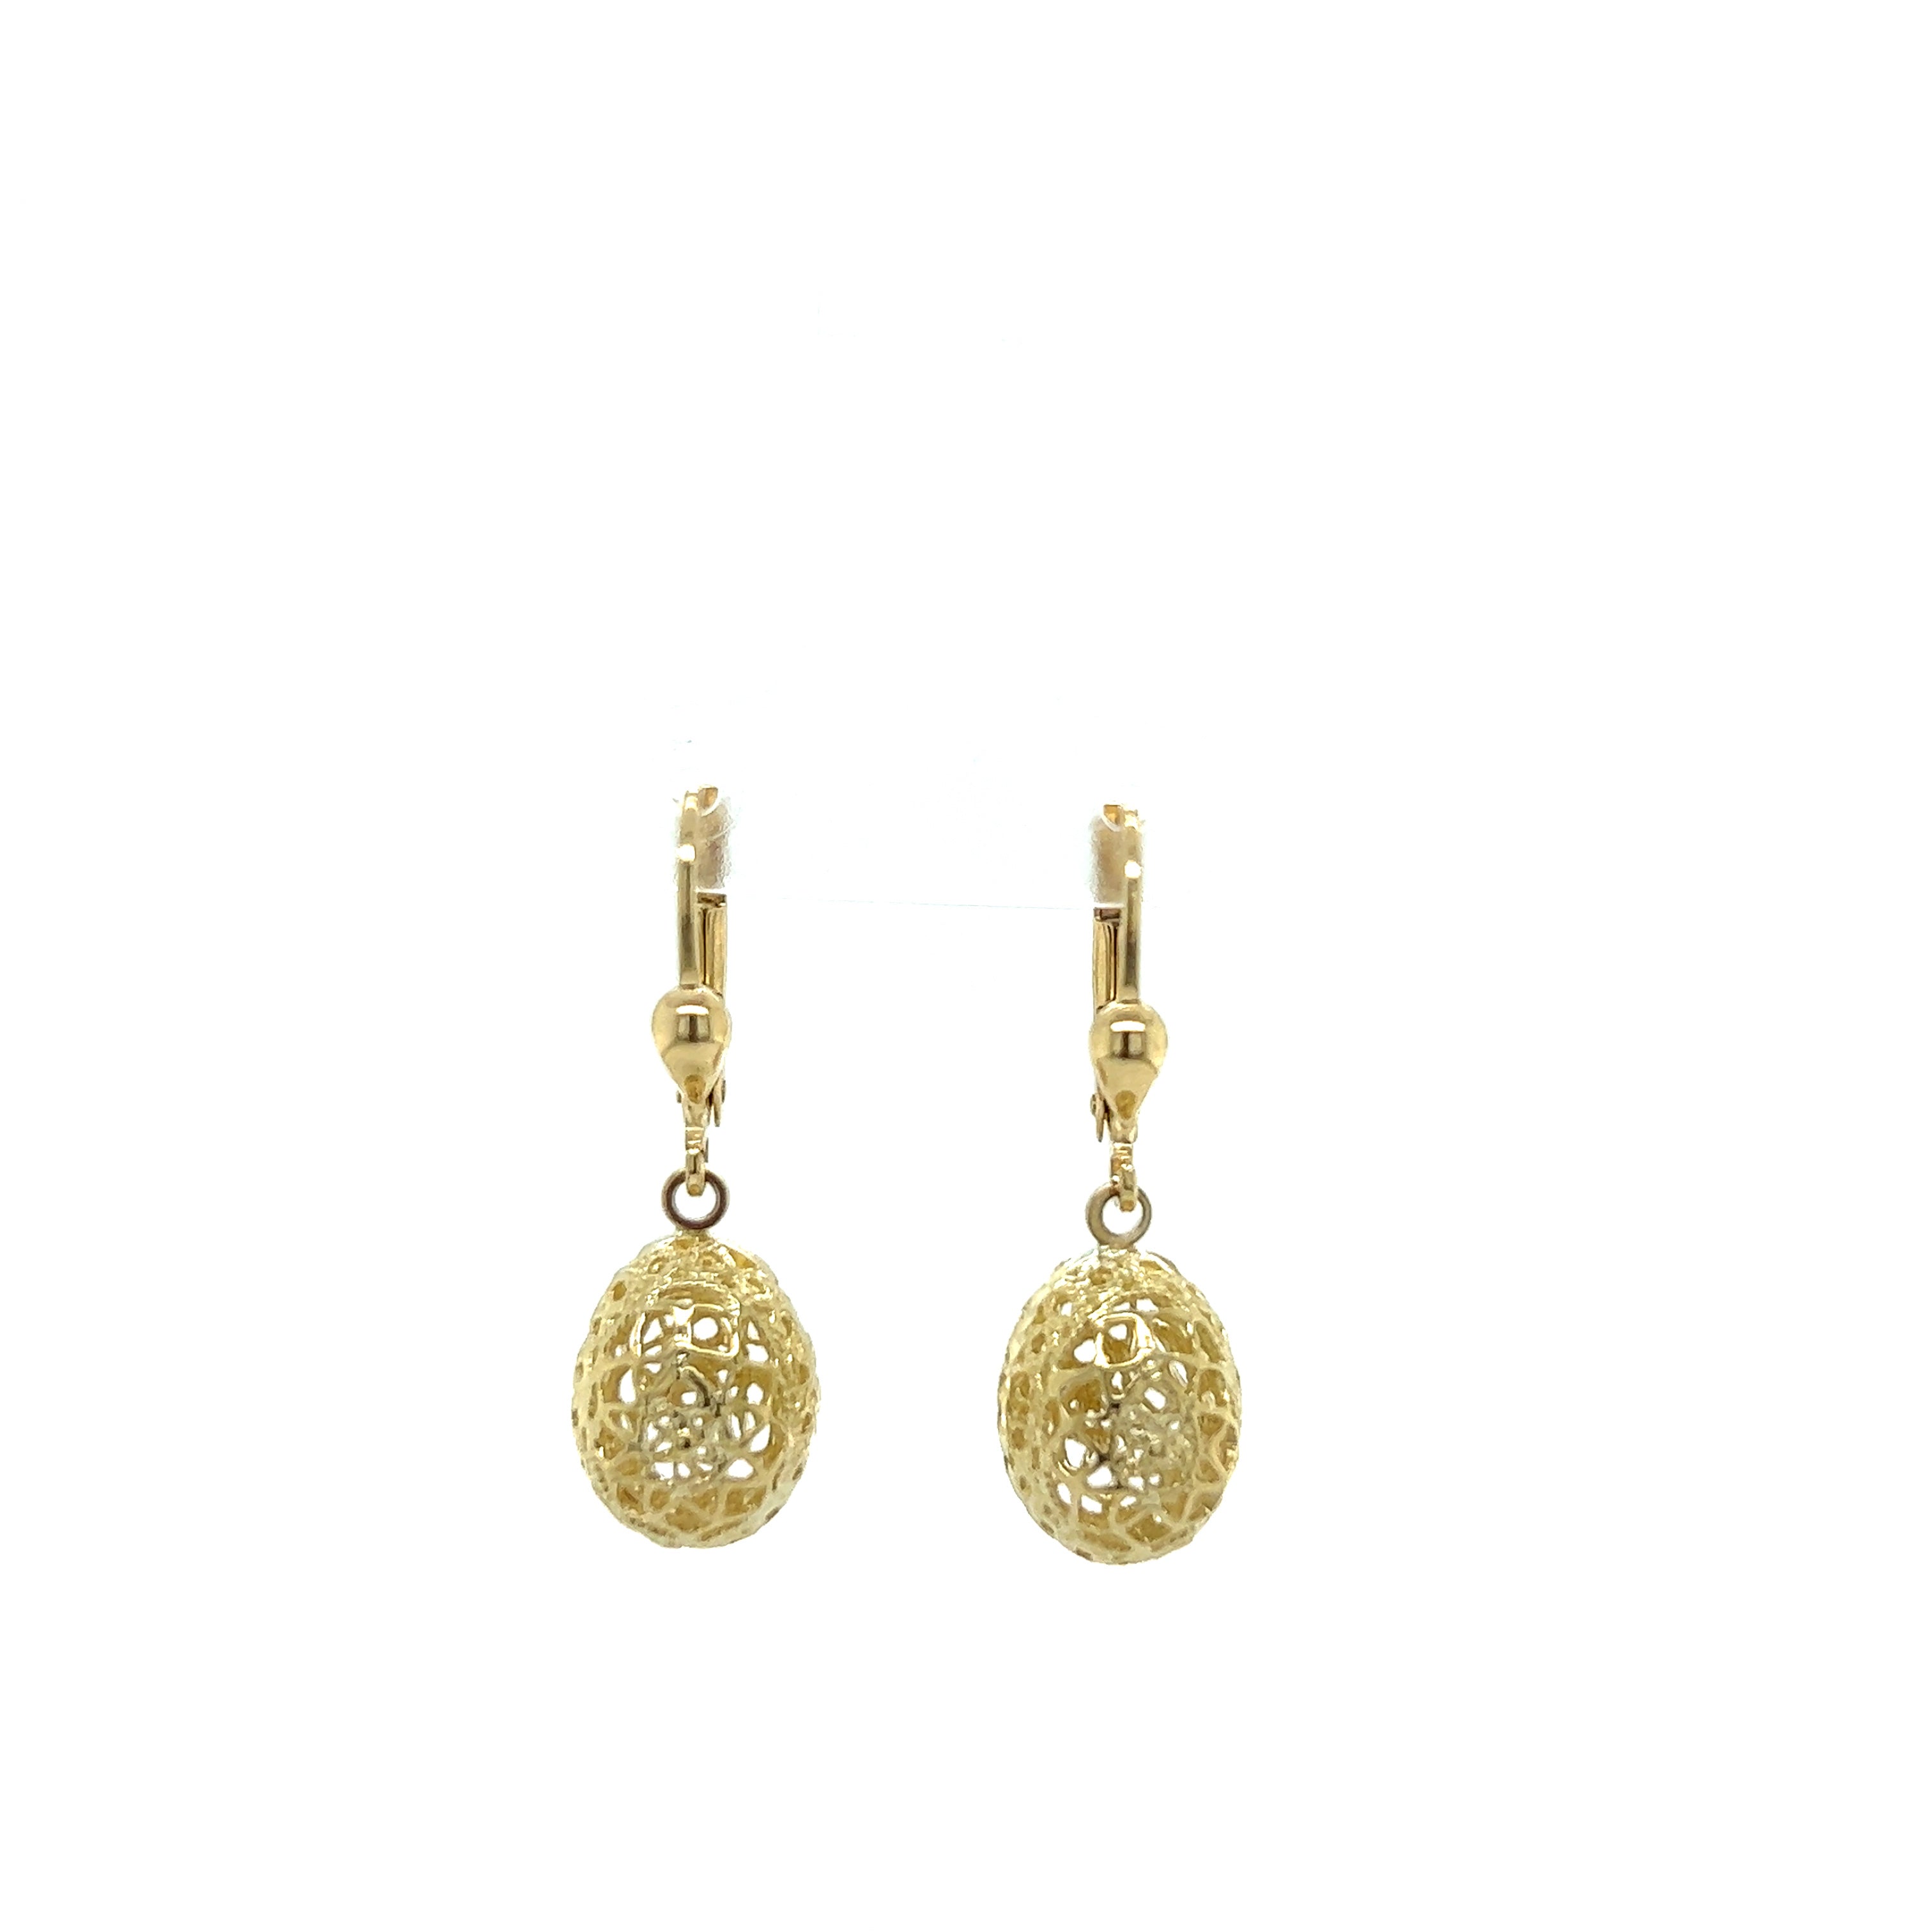 9ct yellow gold pattern drop earrings.